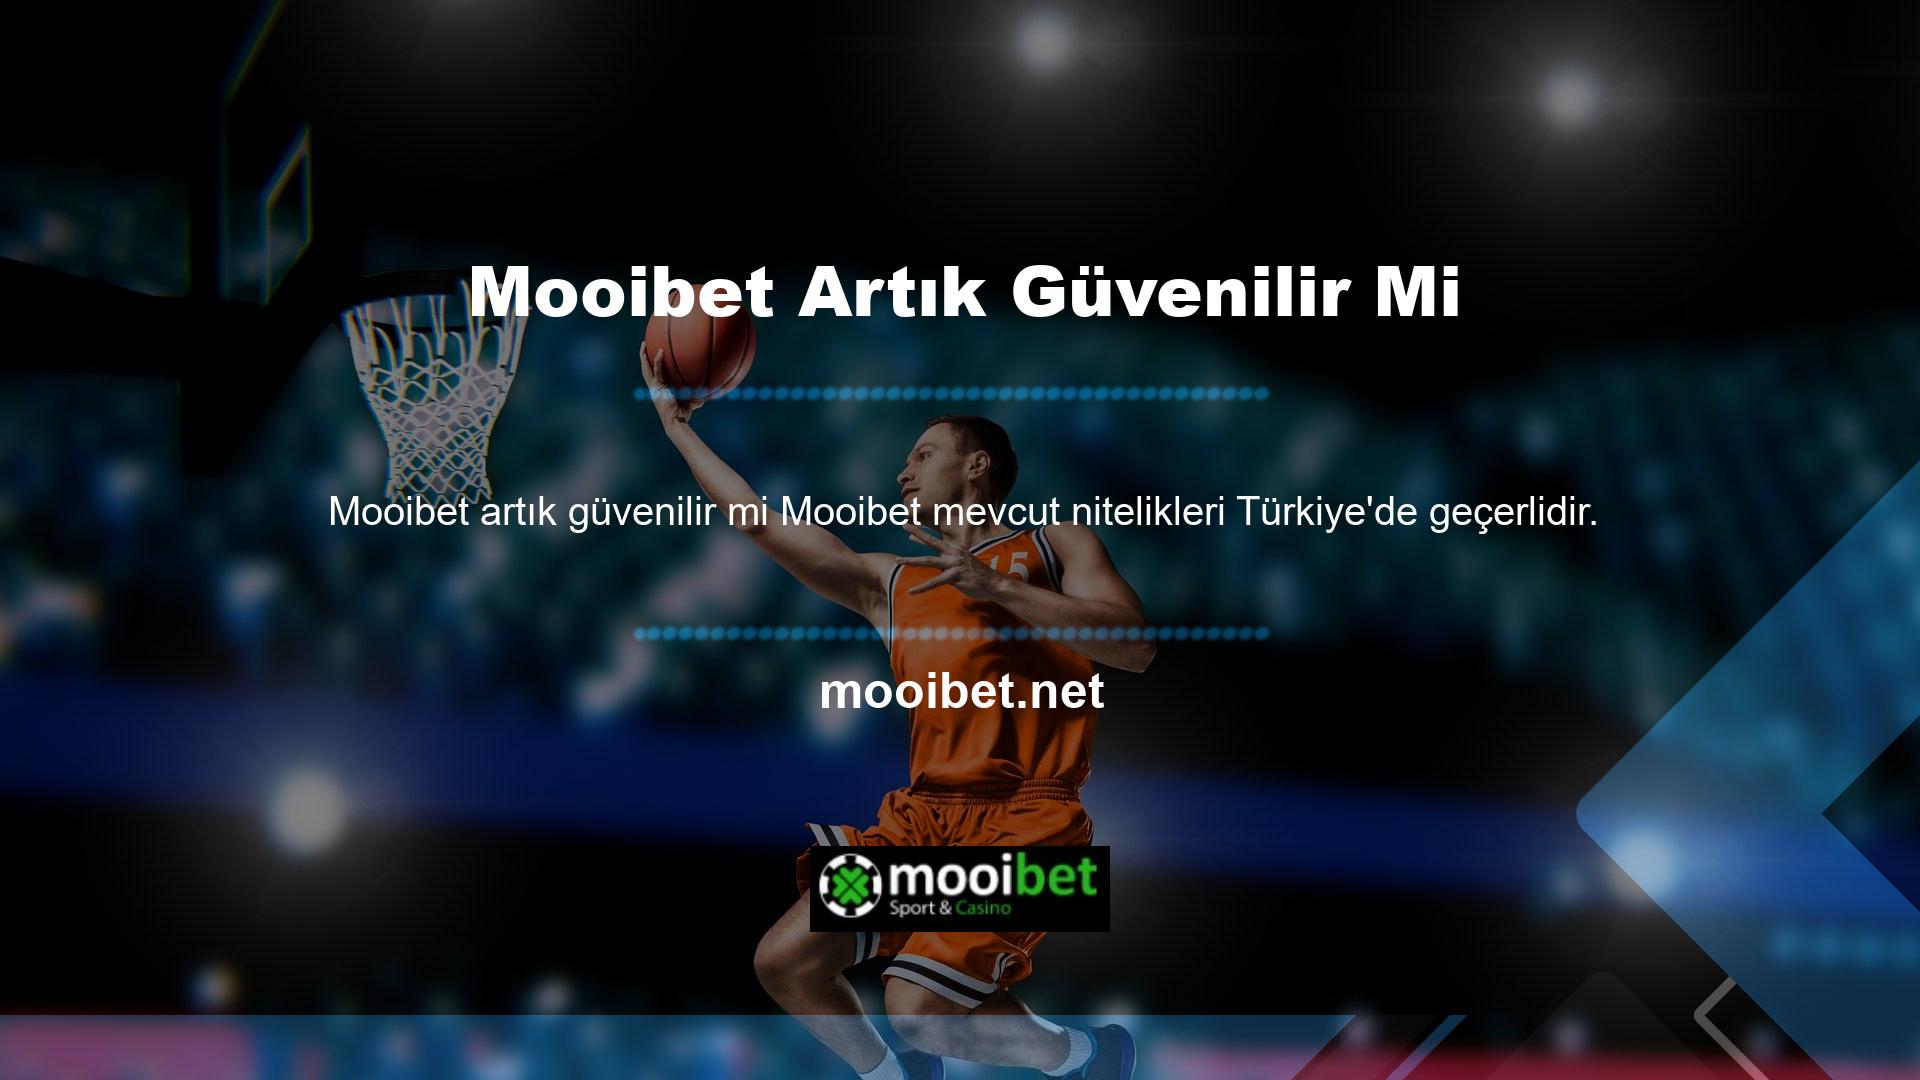 Mooibet bahis sitesi, süreci kolaylaştırmak için üyelerine Türkçe dil desteği ile de destek vermektedir